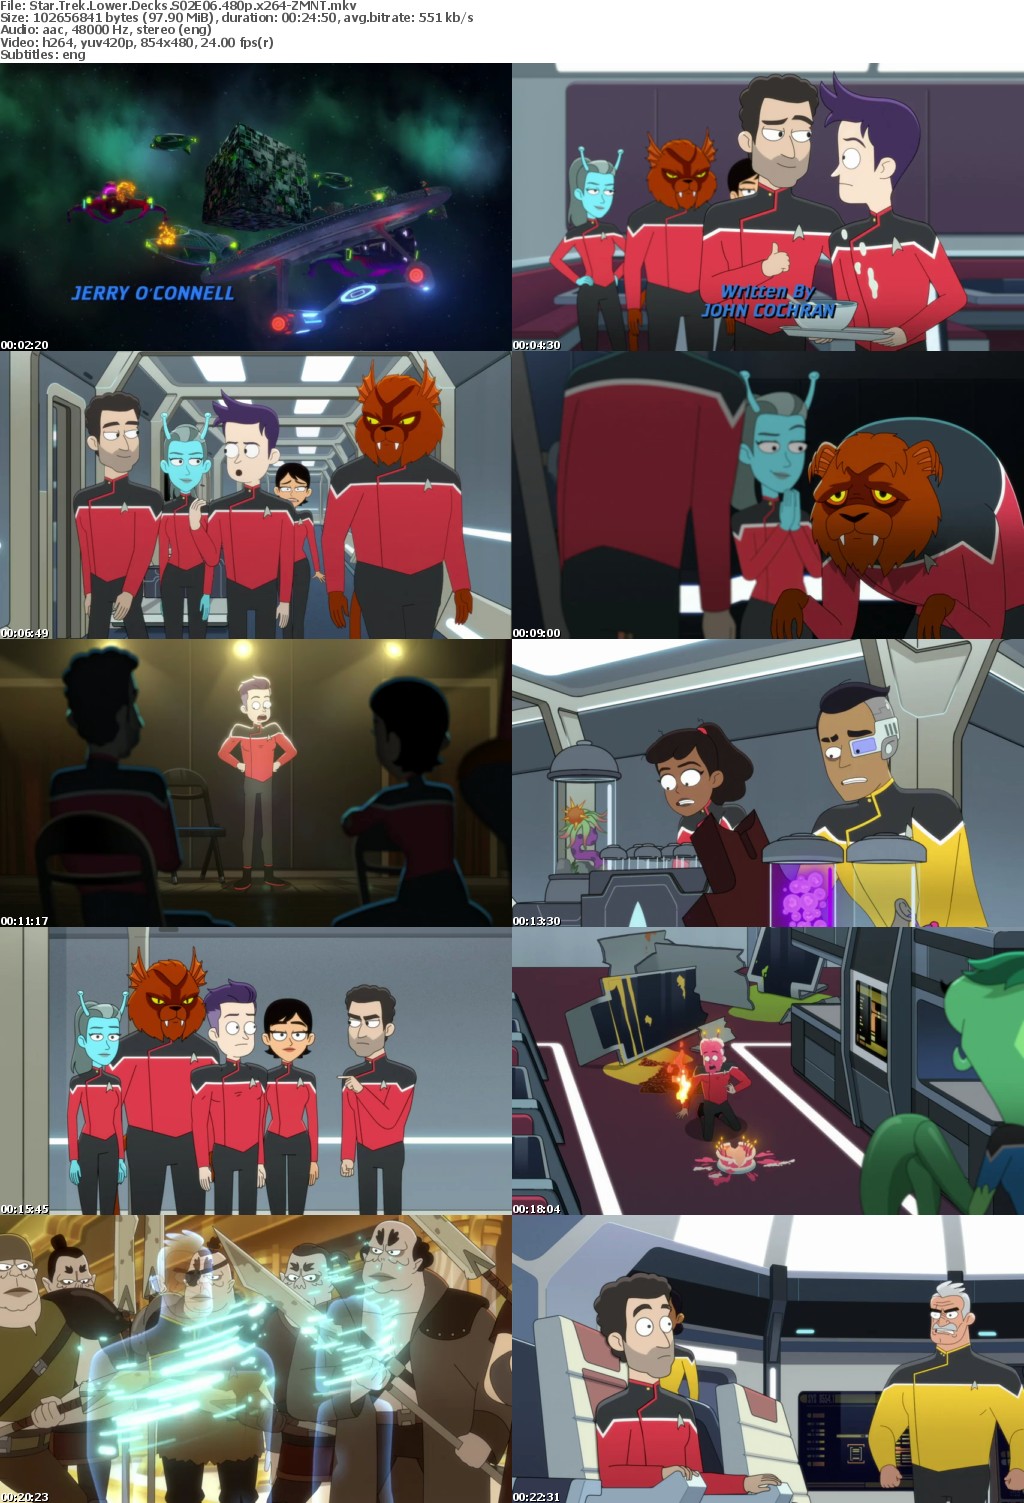 Star Trek Lower Decks S02E06 480p x264-ZMNT